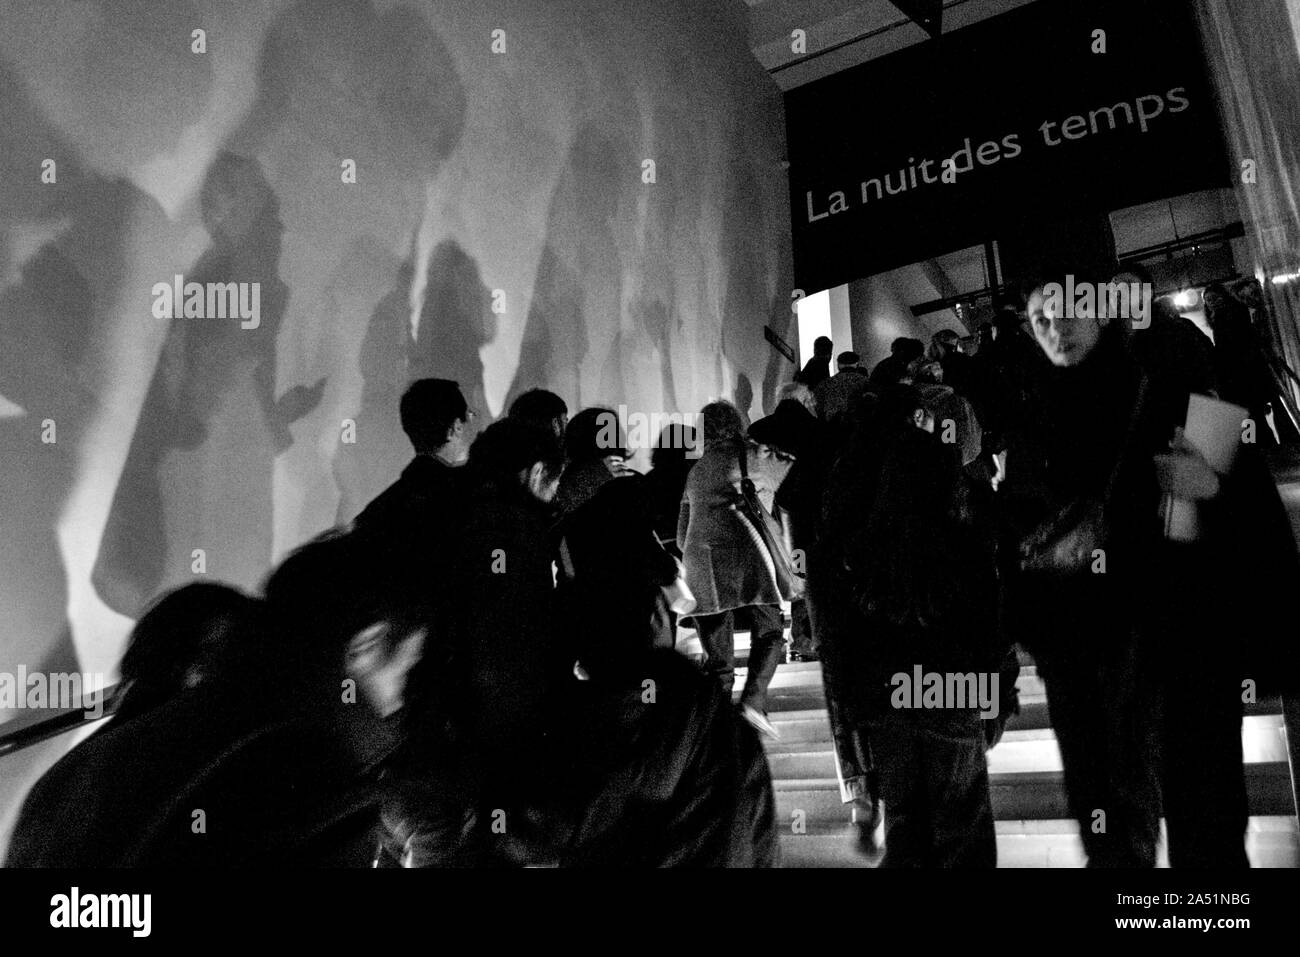 Pariser Musee de l'homme' LA NUIT DES TEMPS" - SCHATTEN AN DER WAND - PARIS MUSEUM - 'NACHT DER ZEIT" Pariser - SCHRITTE - PARIS FOTOGRAFIE © Frédéric BEAUMONT Stockfoto